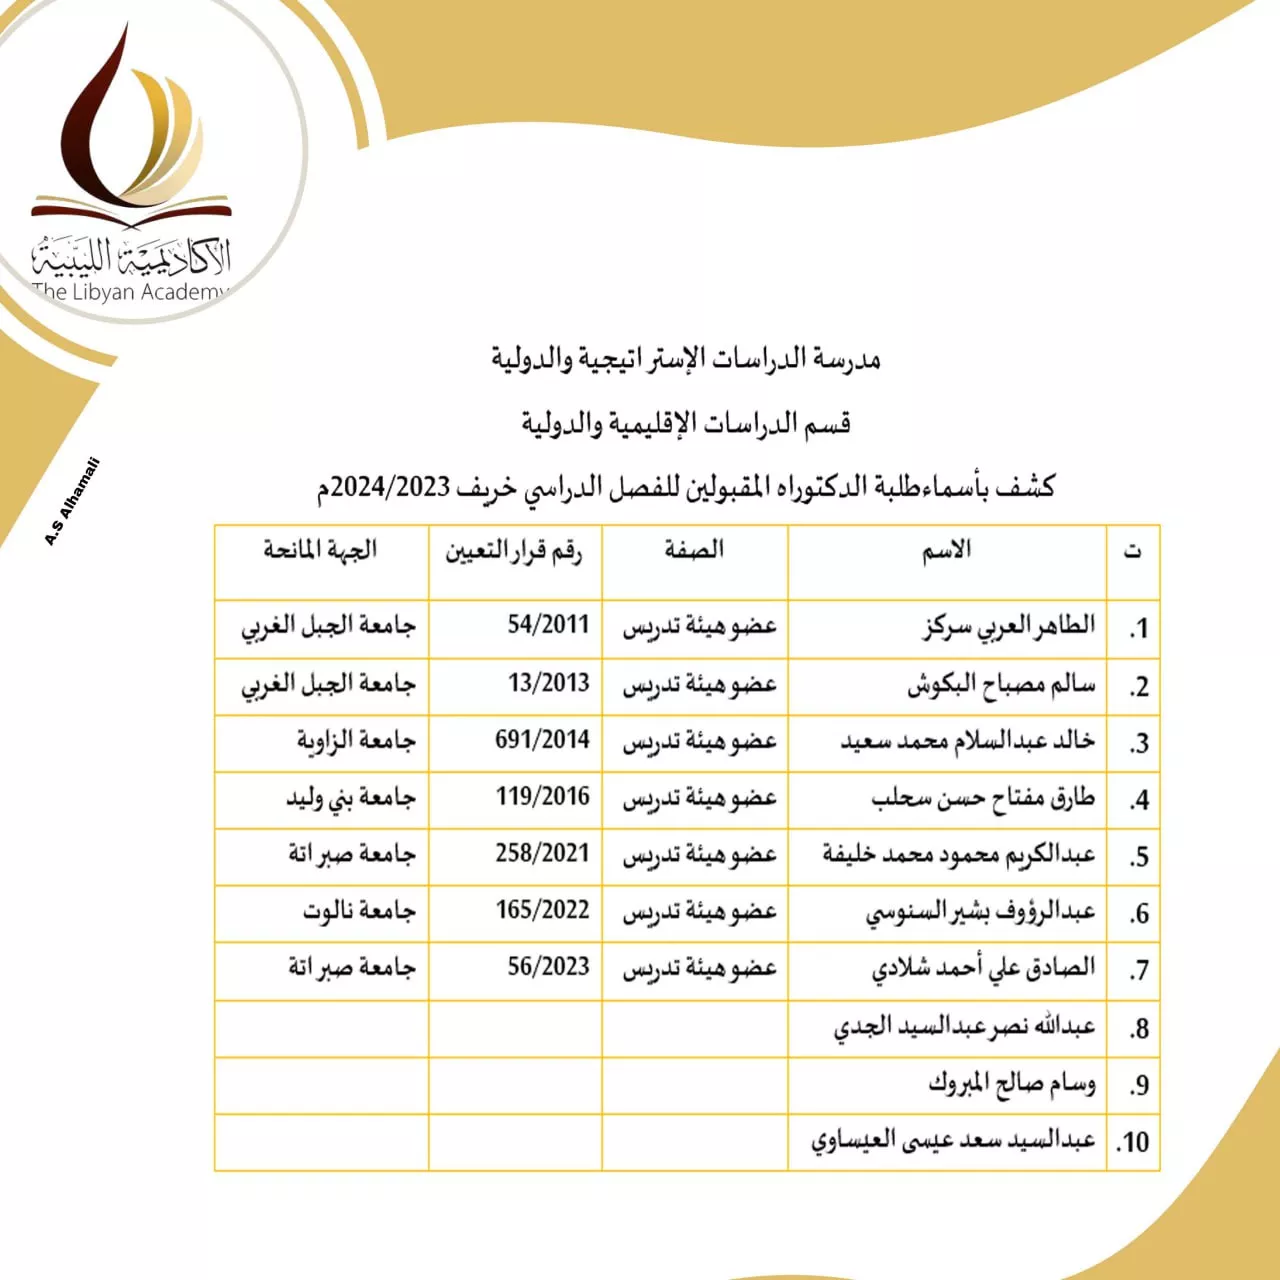 نتائج امتحانات المفاضلة للمتقدمين لدراسة الدكتوراه بالأكاديمية الليبية للدراسات العليا لمدرسة الدراسات الاستراتيجية و الدولية  للفصل الدراسي خريف 2023/ 2024